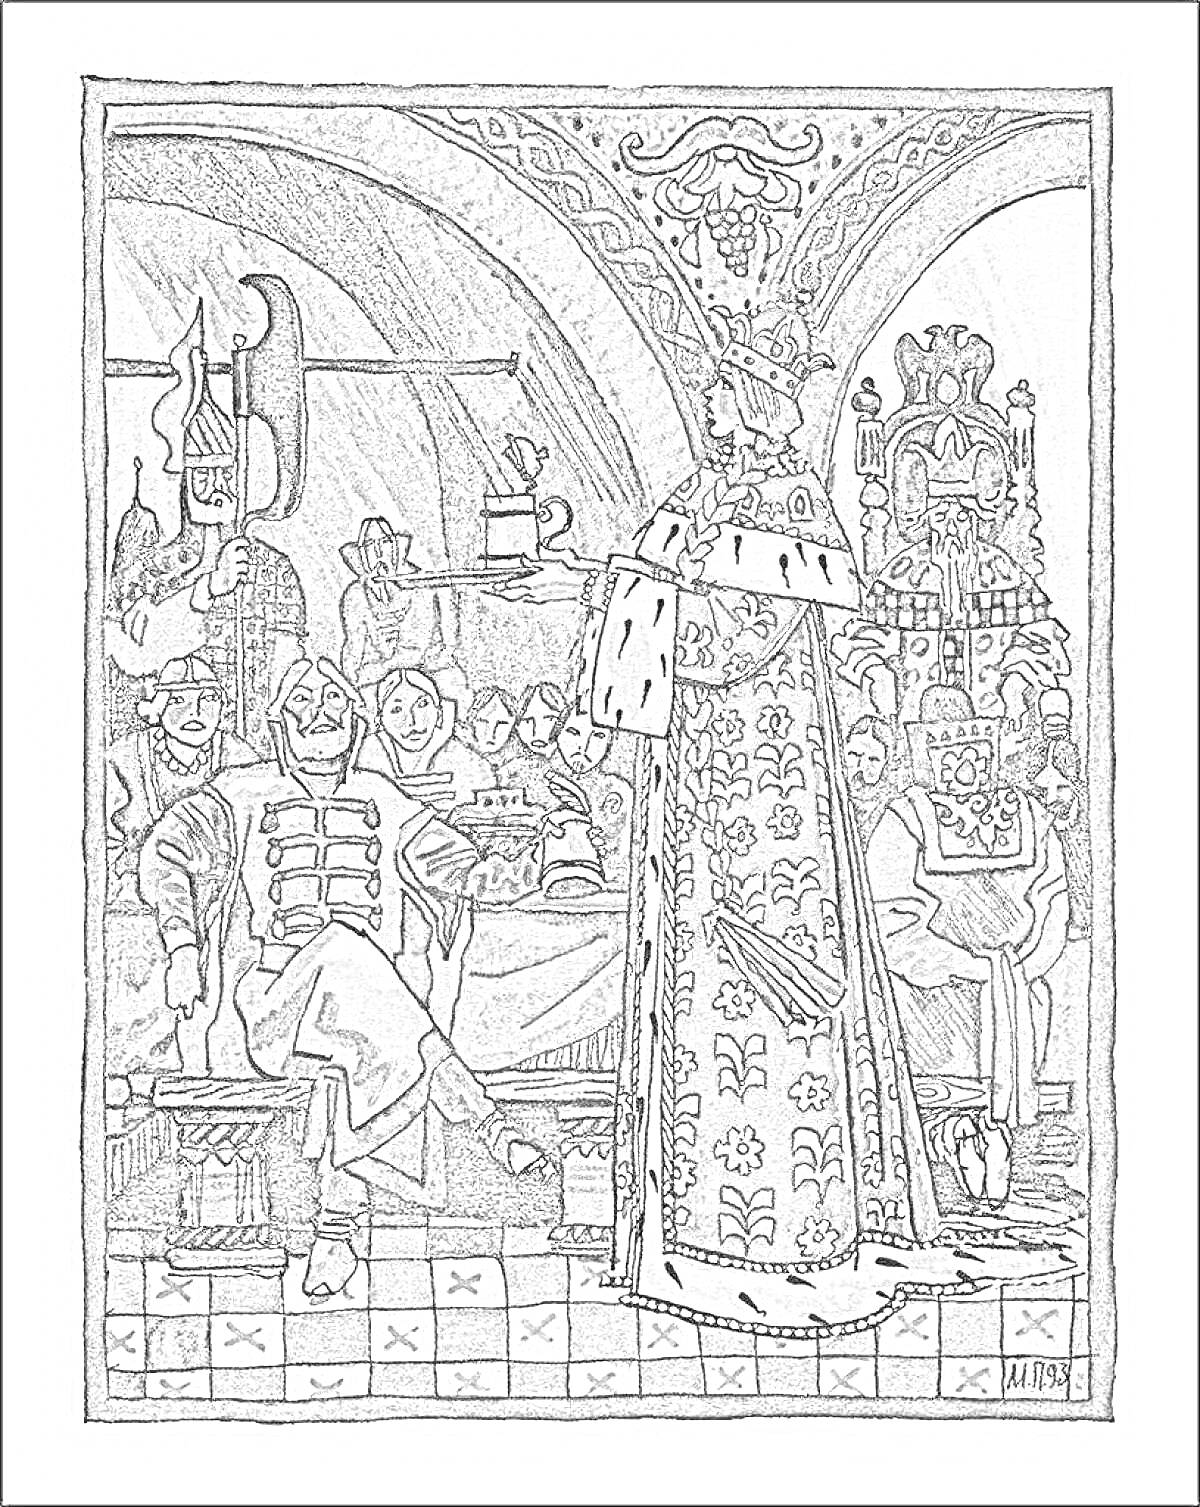 РаскраскаПир в тереме: царь в короне и мантии вслушивается к сидящим за столом воинам и придворным на банкете в богатом зале с кессонным потолком.